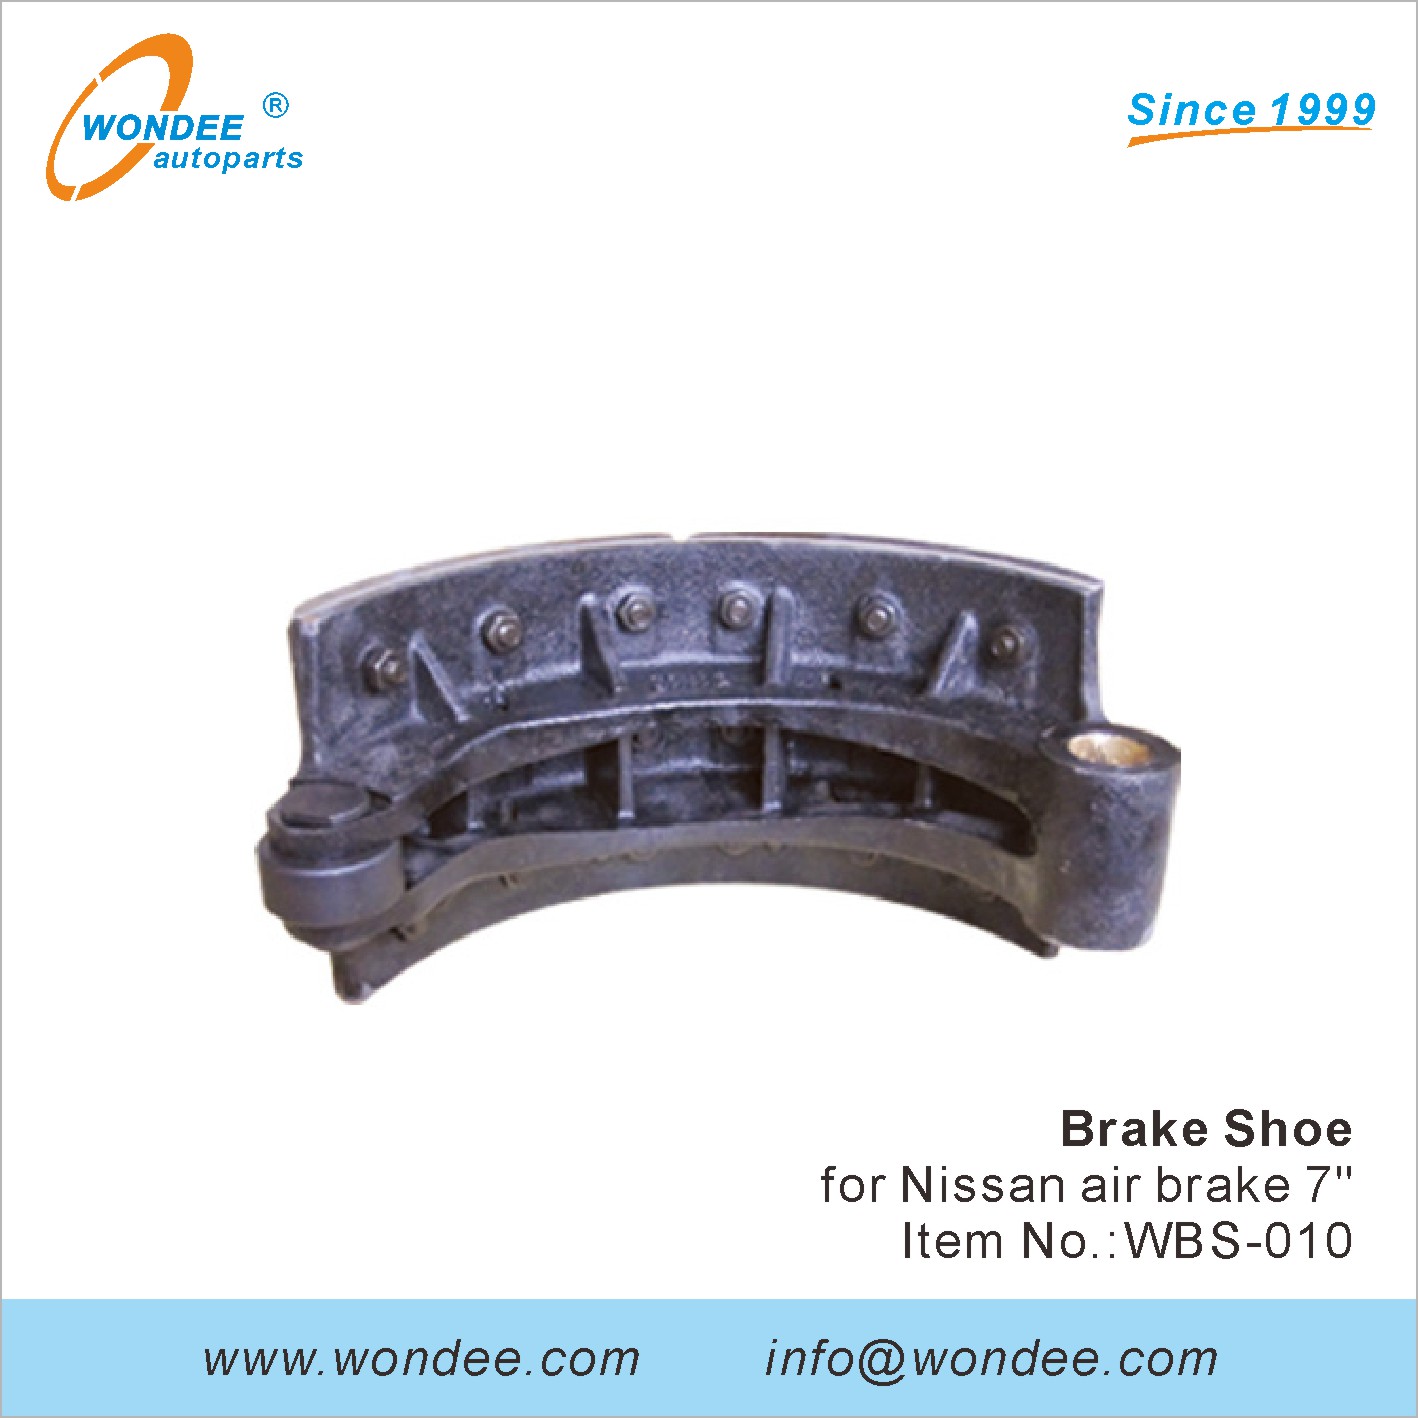 WONDEE brake shoe (10)